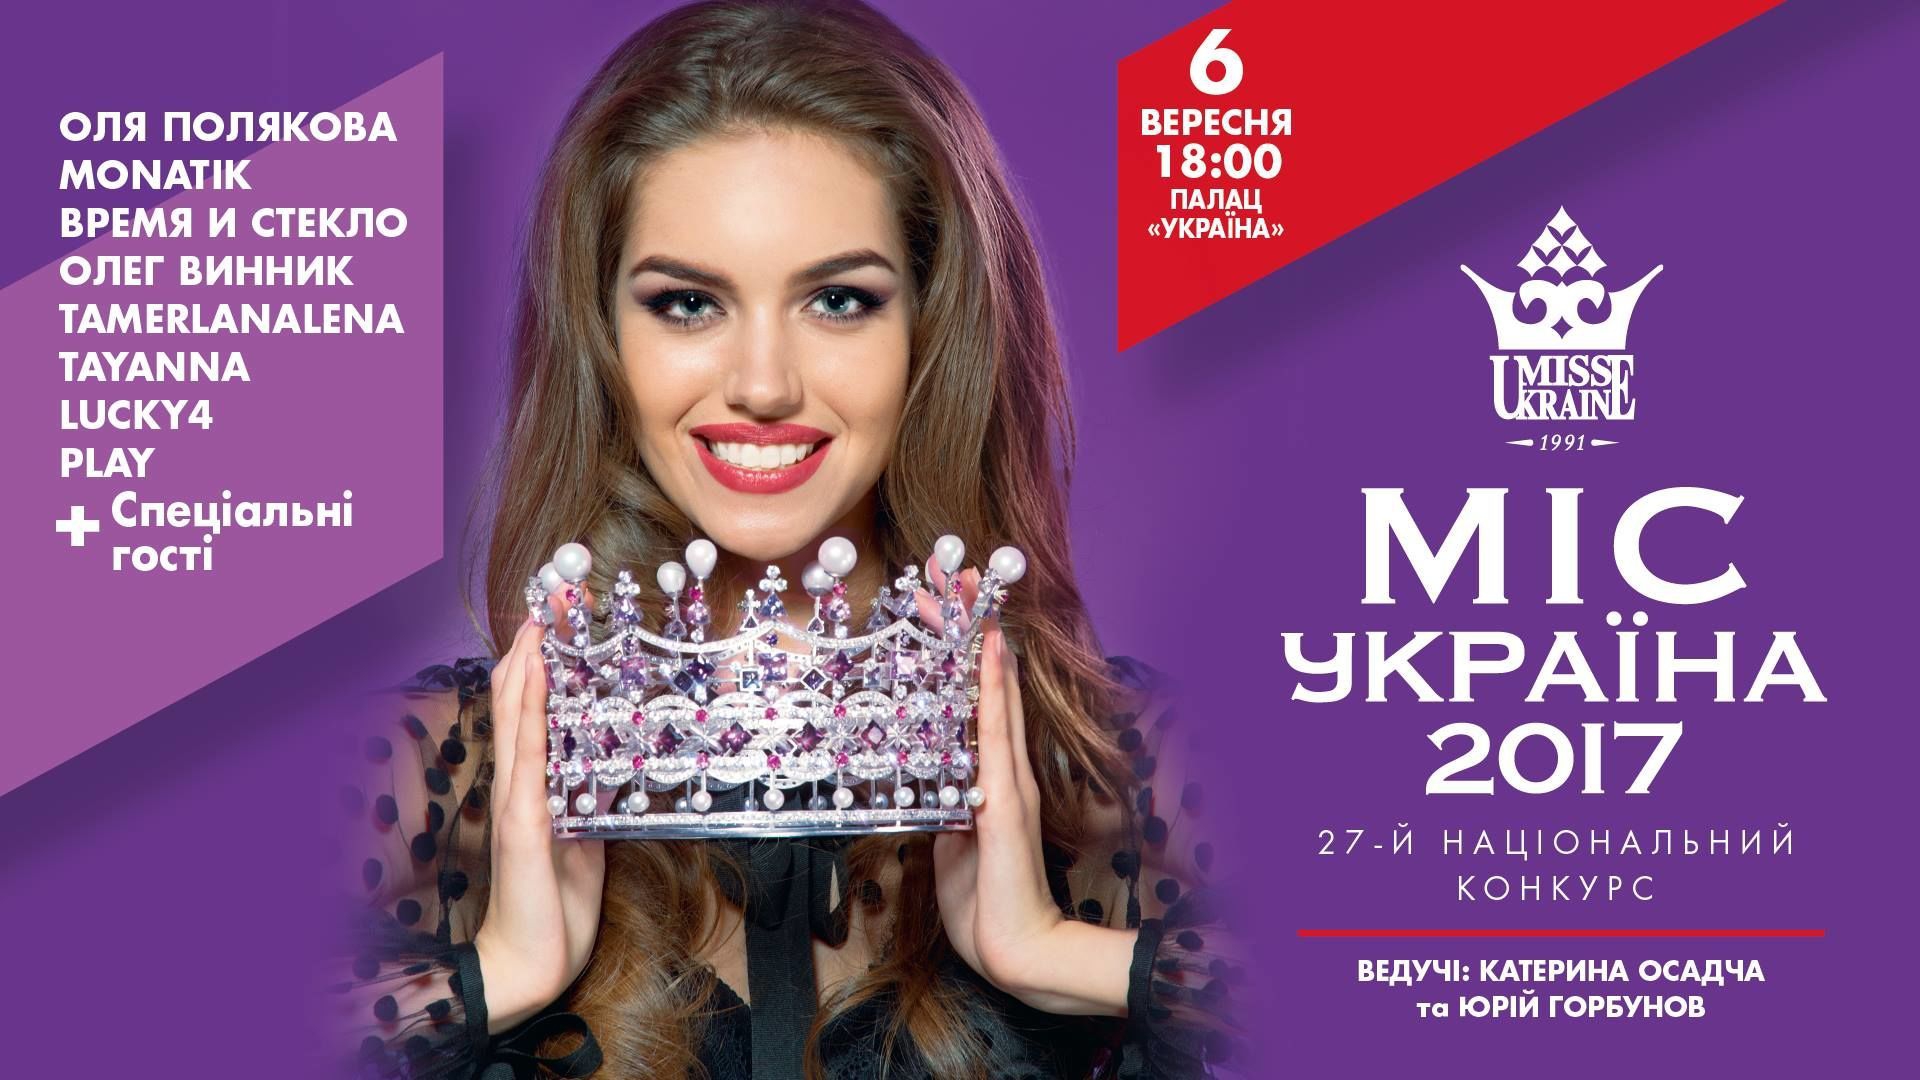 Мисс Украина 2017: победительницей стала Полина Ткач из Киева - фото 1